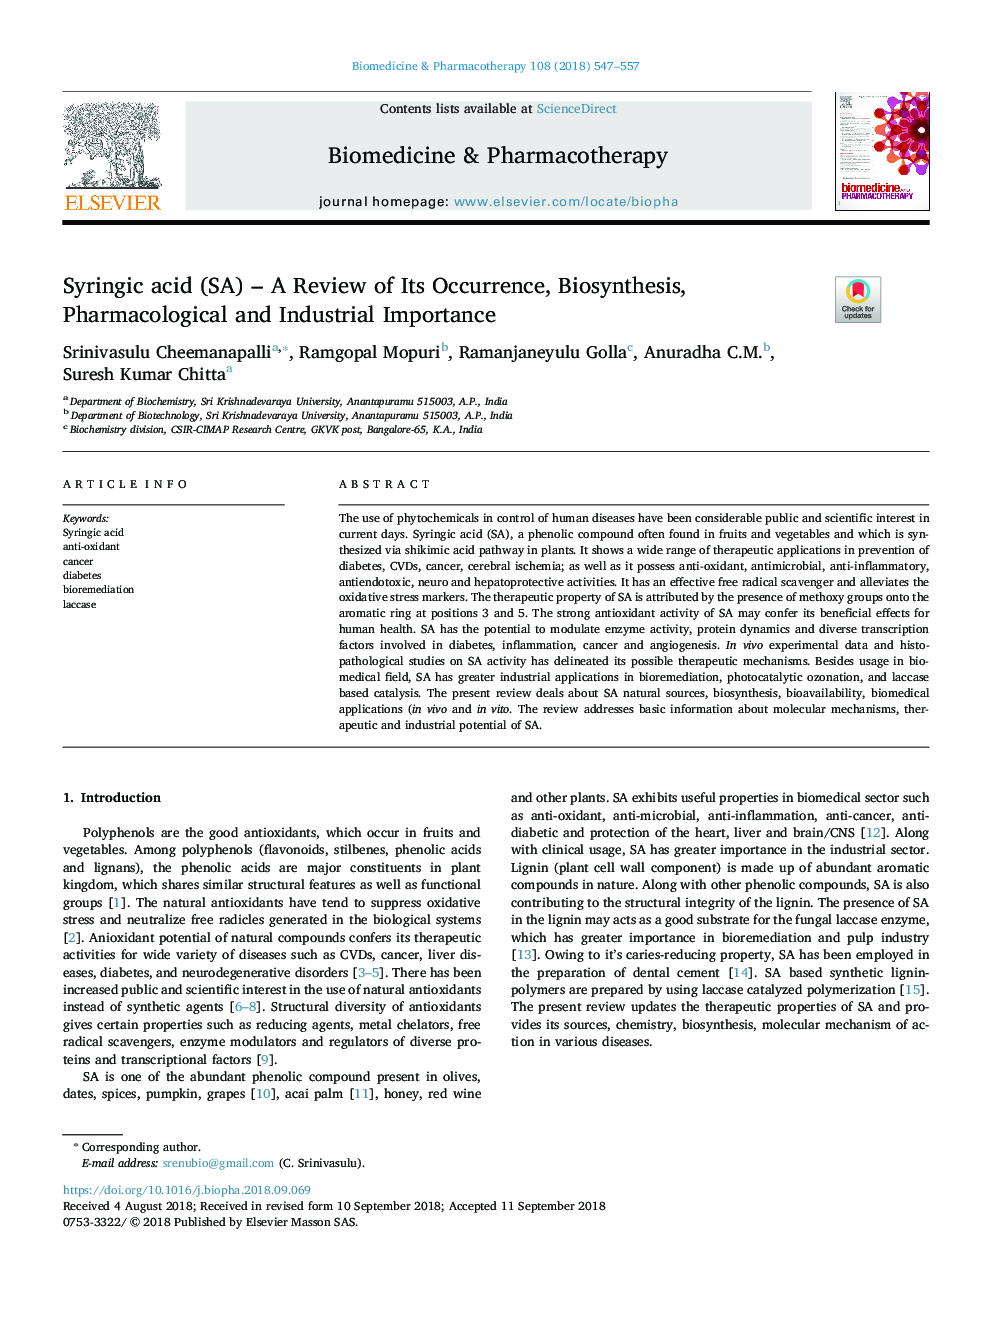 Syringic acid (SA) â A Review of Its Occurrence, Biosynthesis, Pharmacological and Industrial Importance